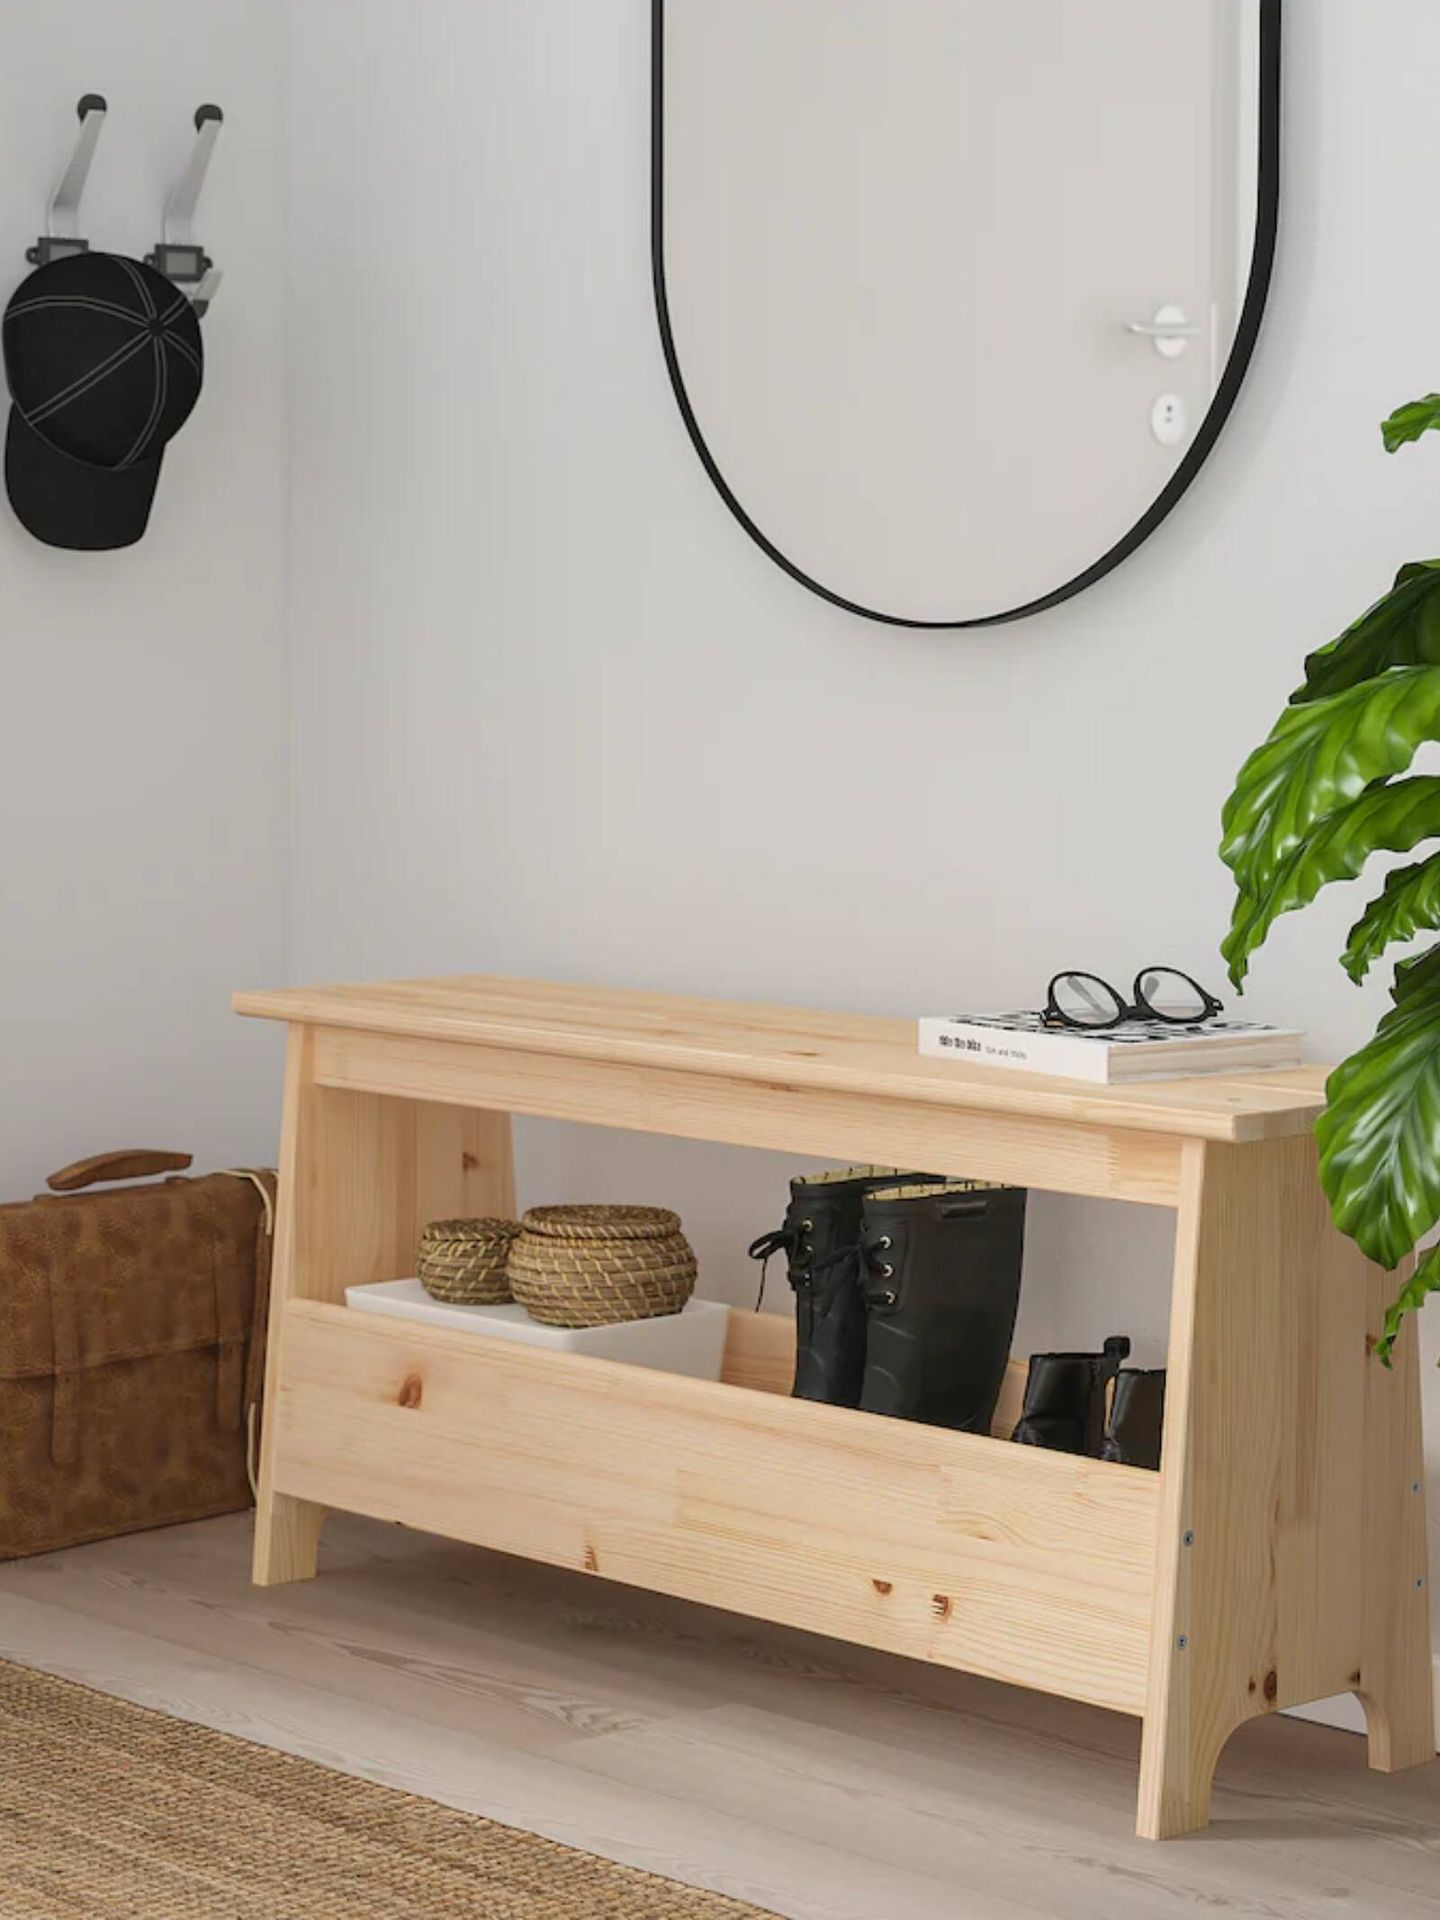 El banco de madera de Ikea ideal para cualquier estancia. (Cortesía)